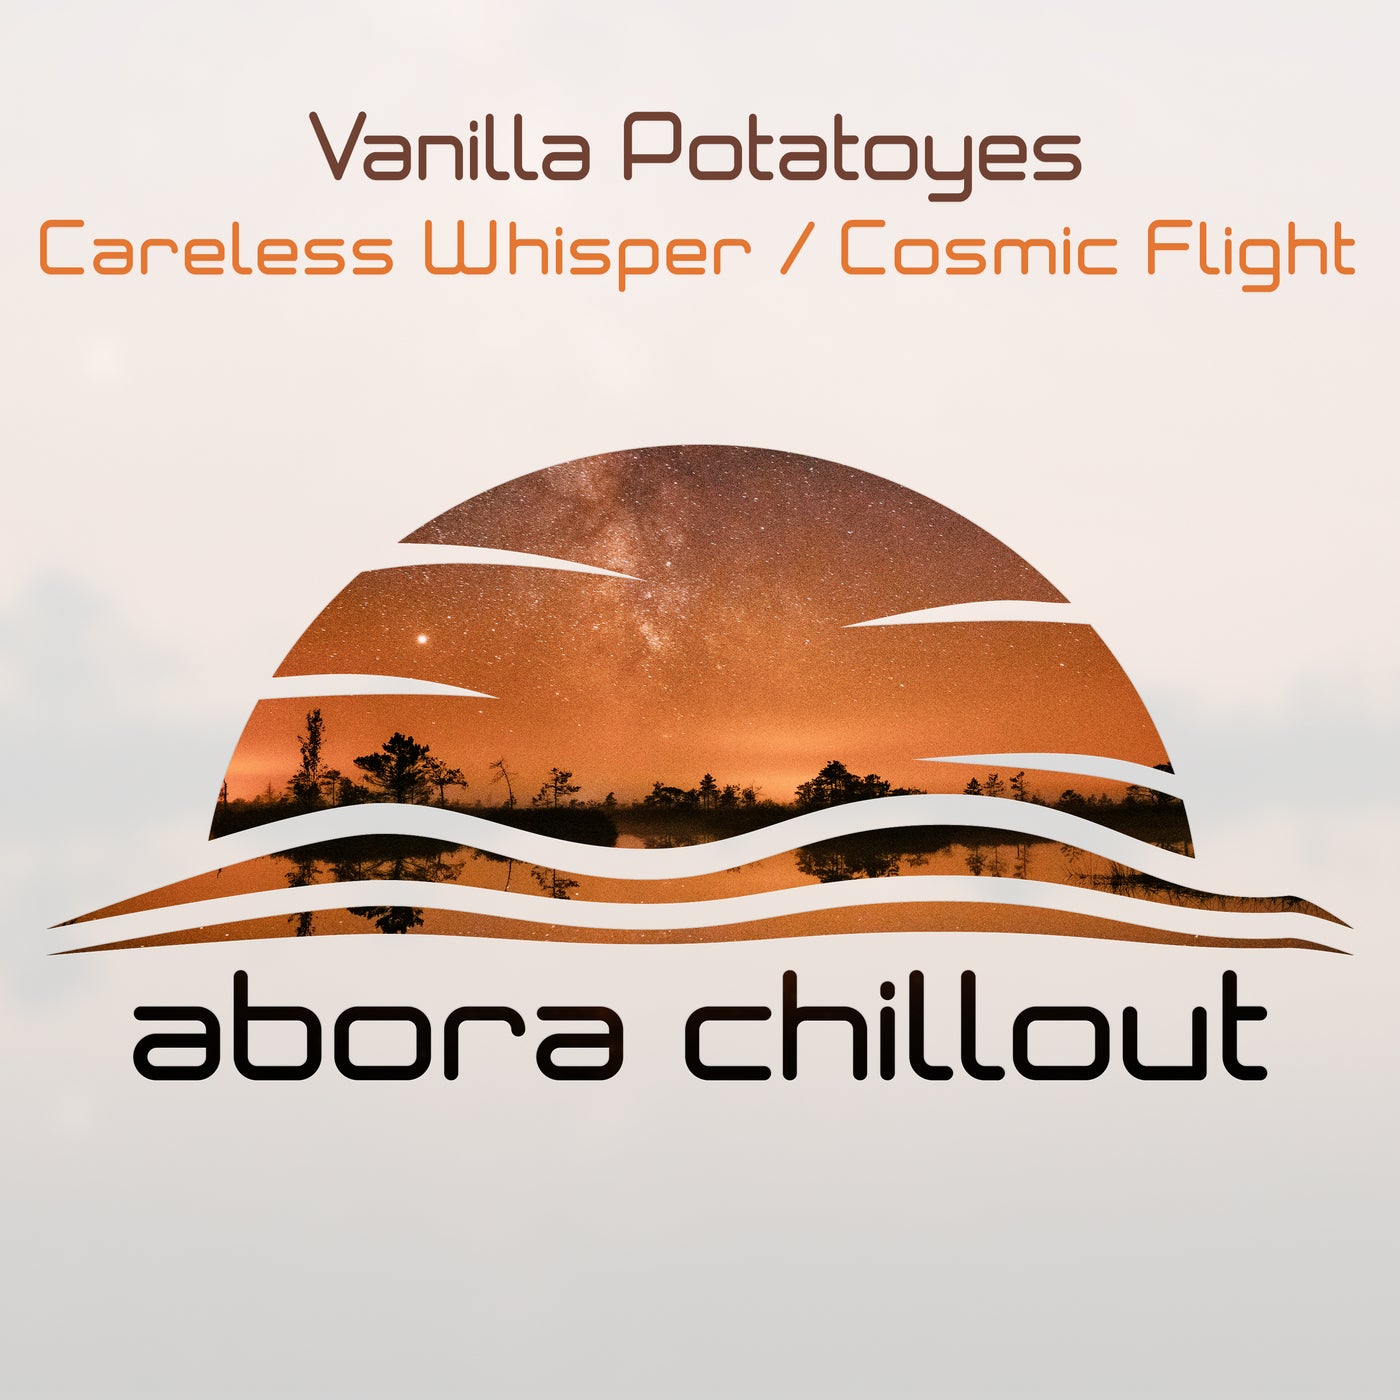 Careless Whisper / Cosmic Flight